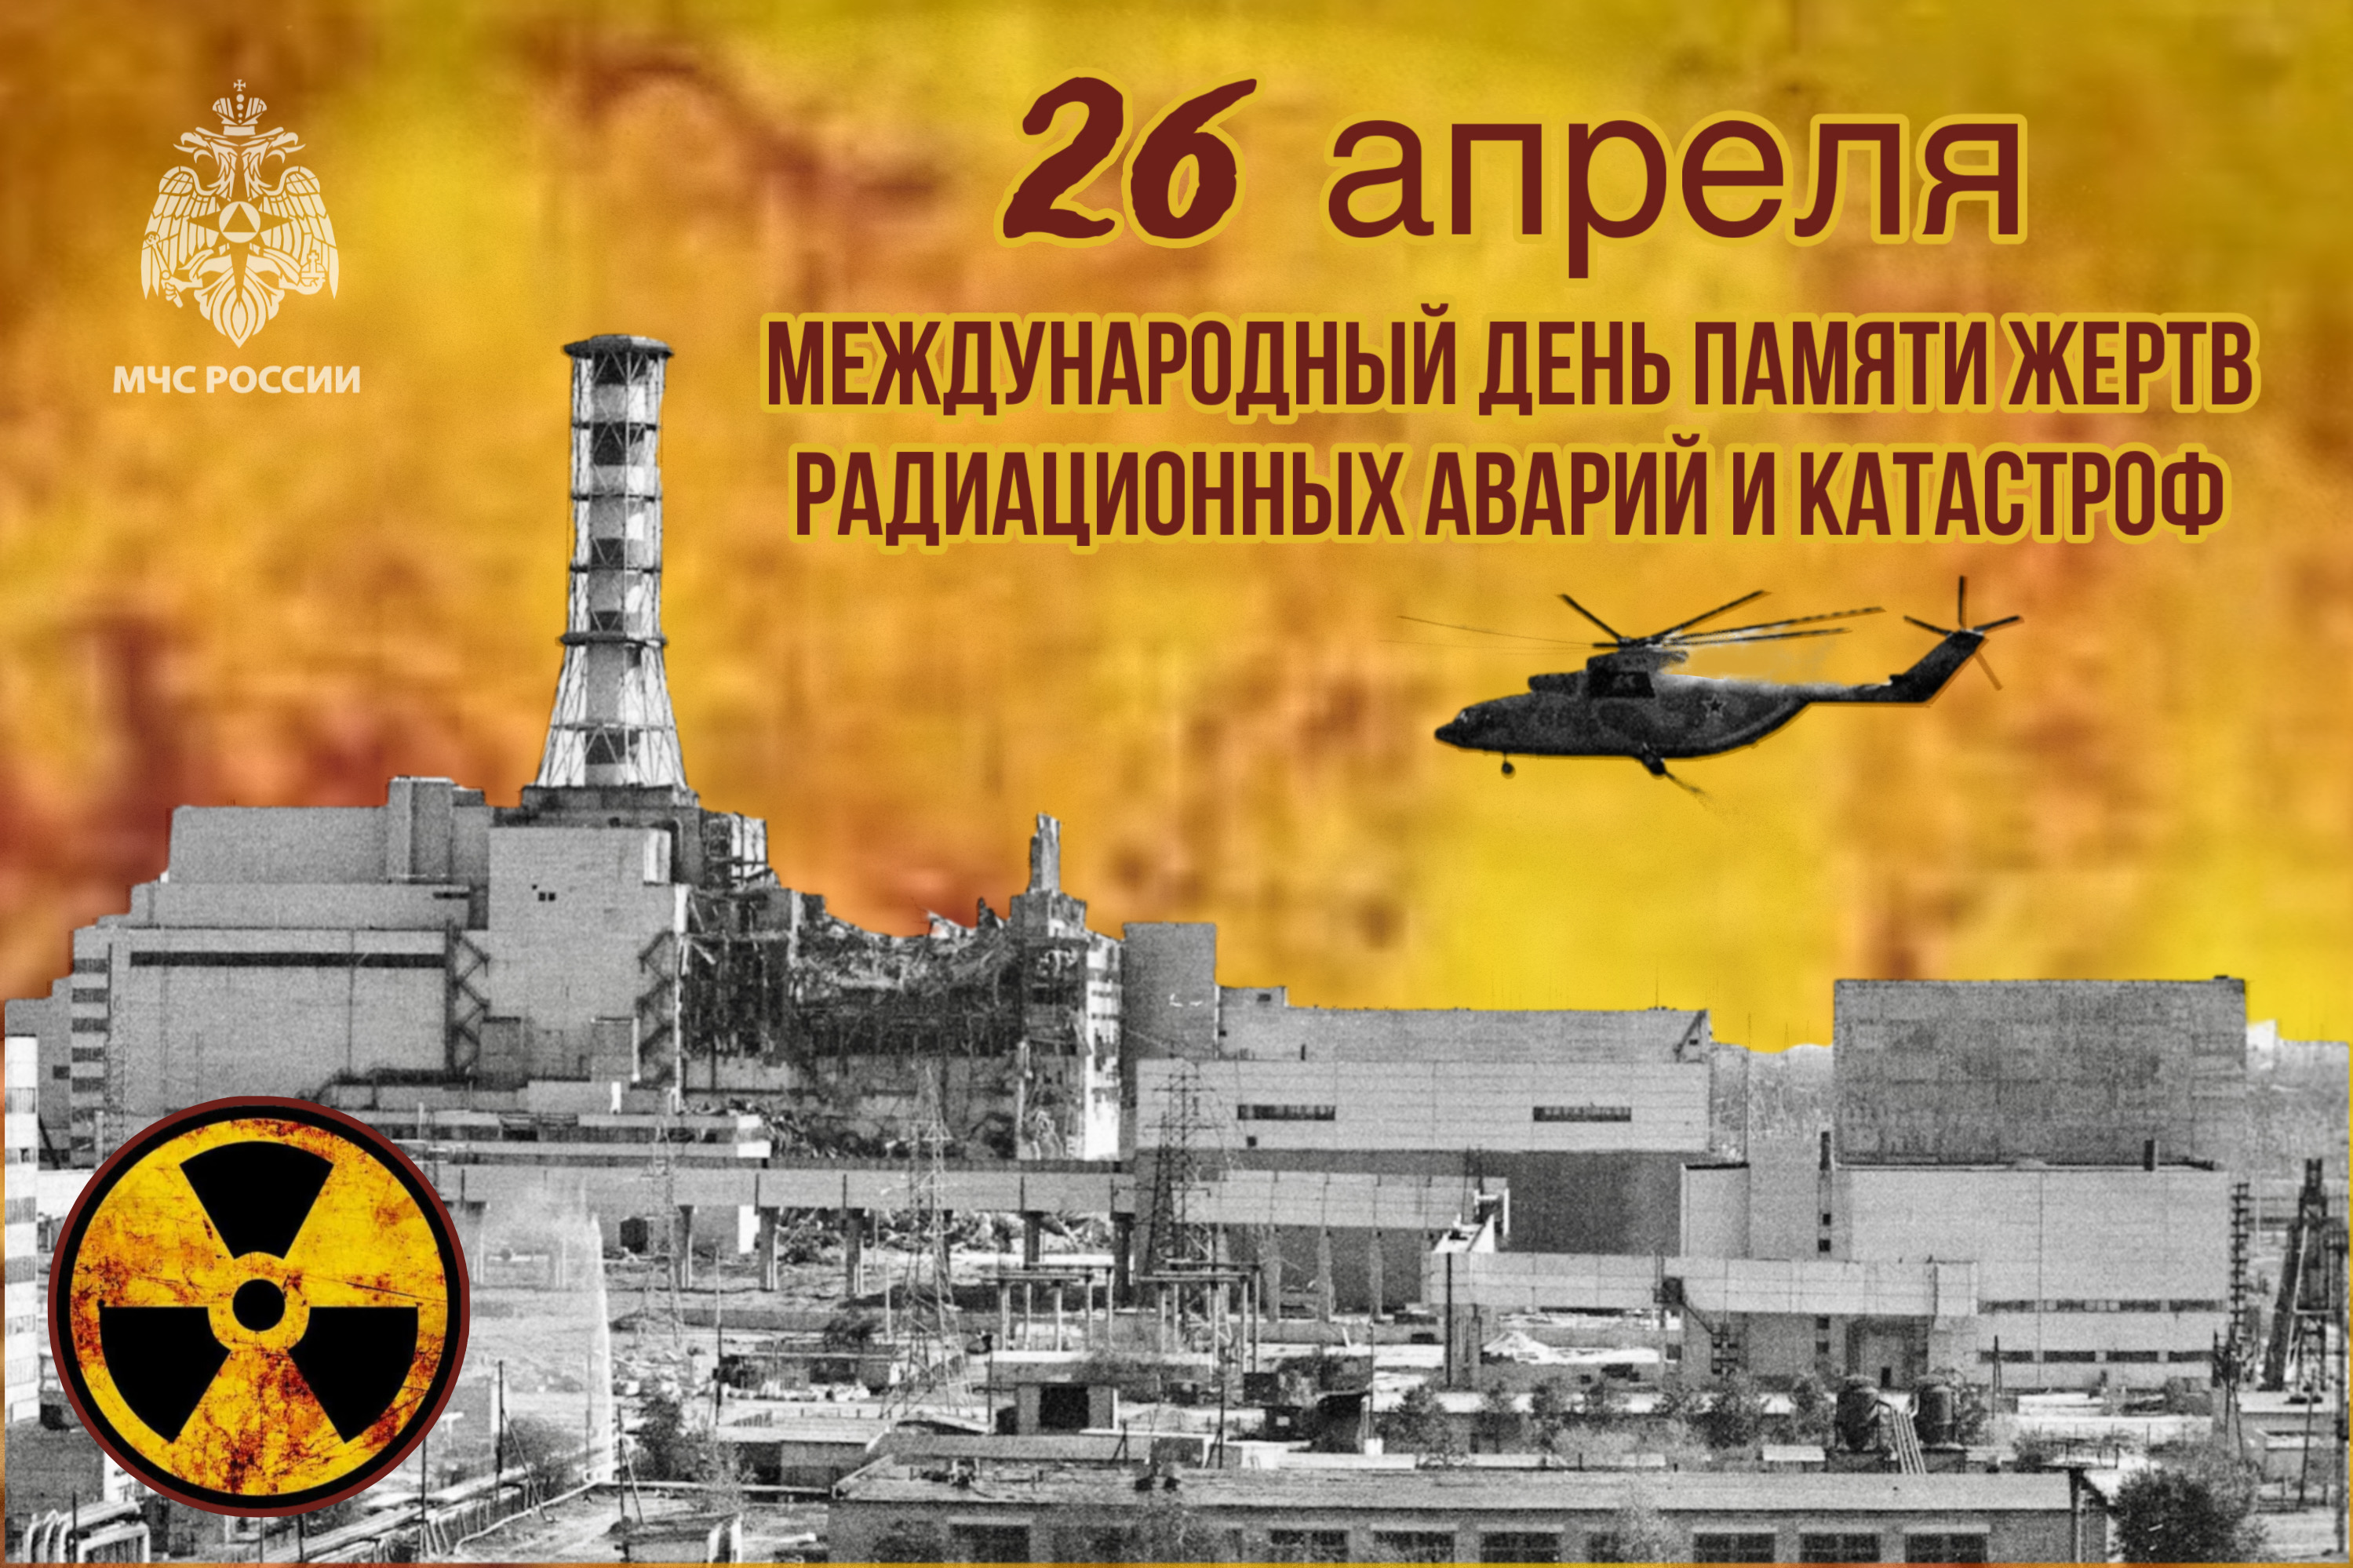 26 апреля Международный день памяти жертв радиационных аварий и катастроф.